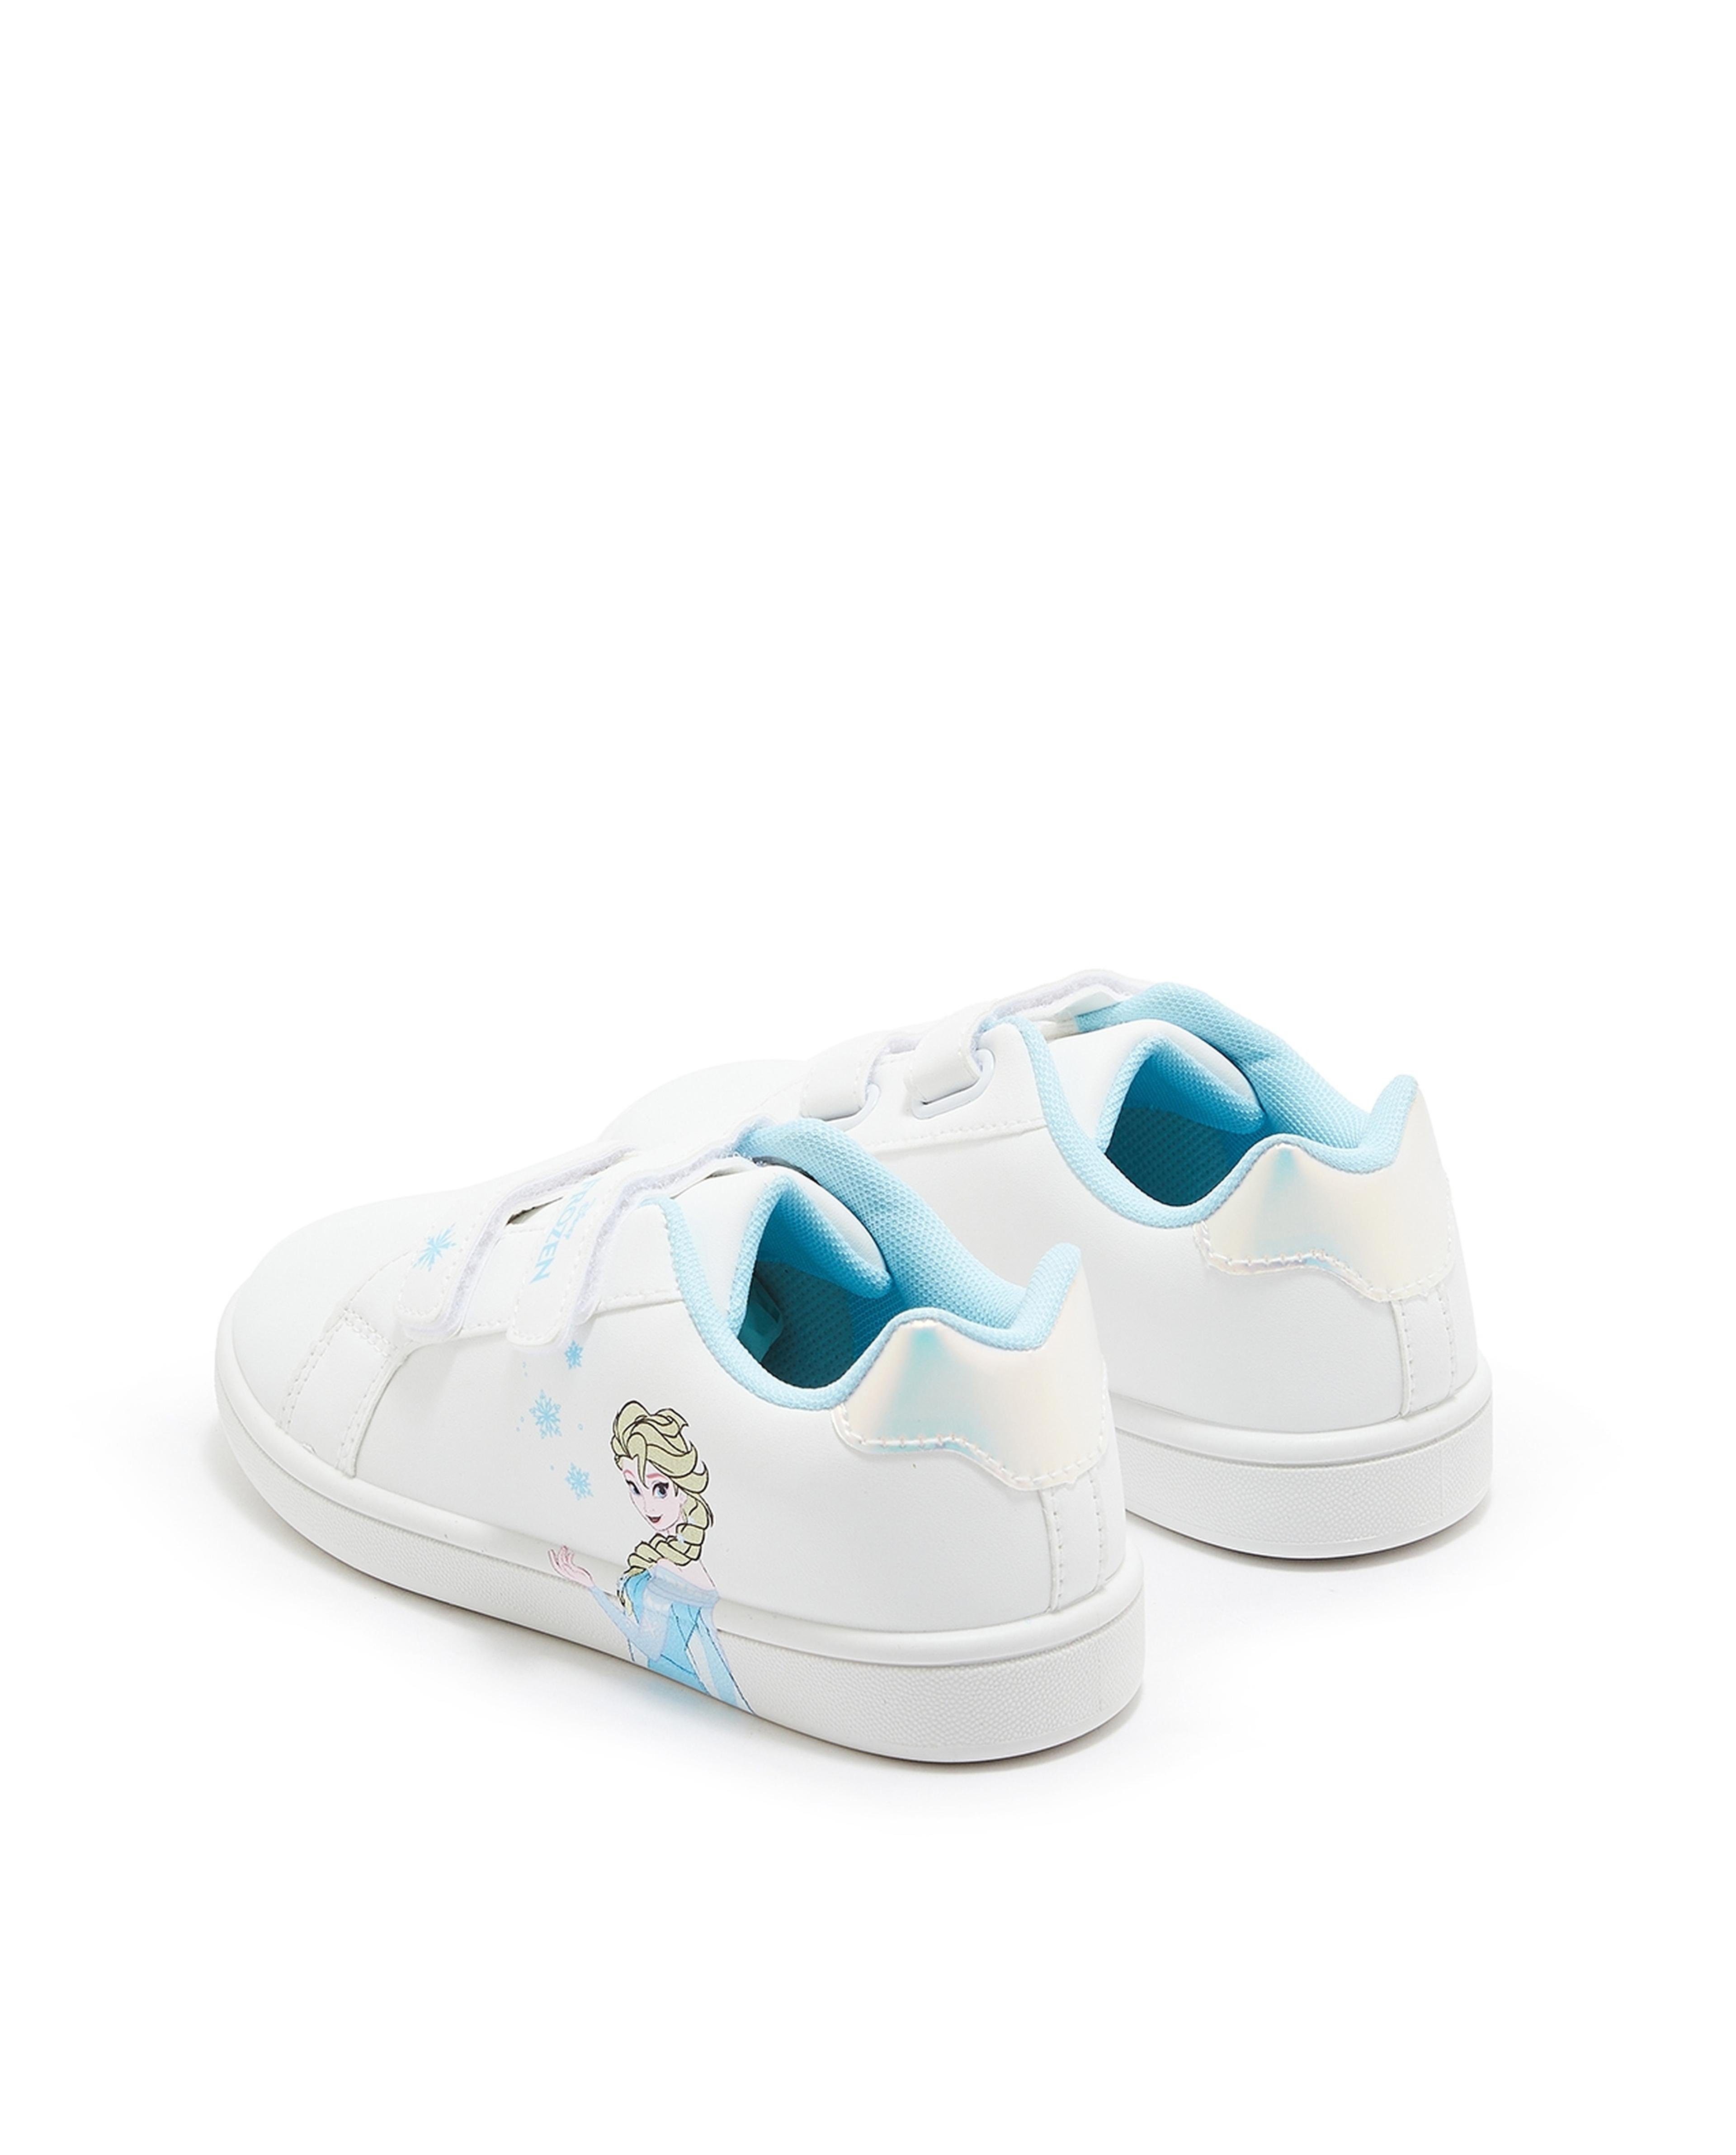 Frozen Elsa Velcro Sneakers